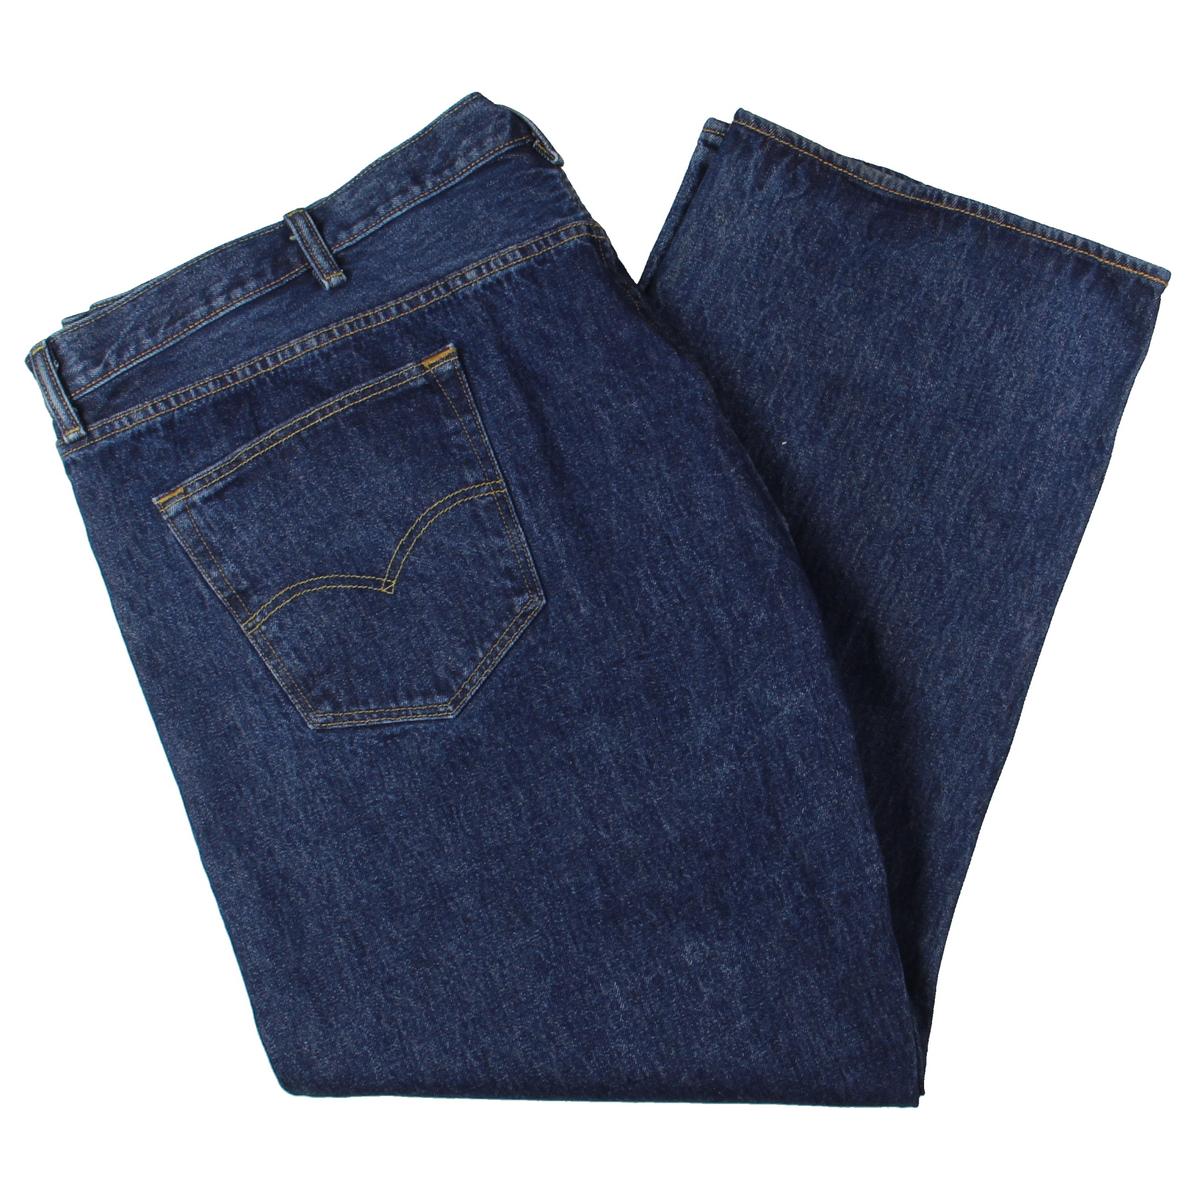 Levi Strauss Mens 501 Blue Original Fit Bootcut Jeans Big & Tall 52/30